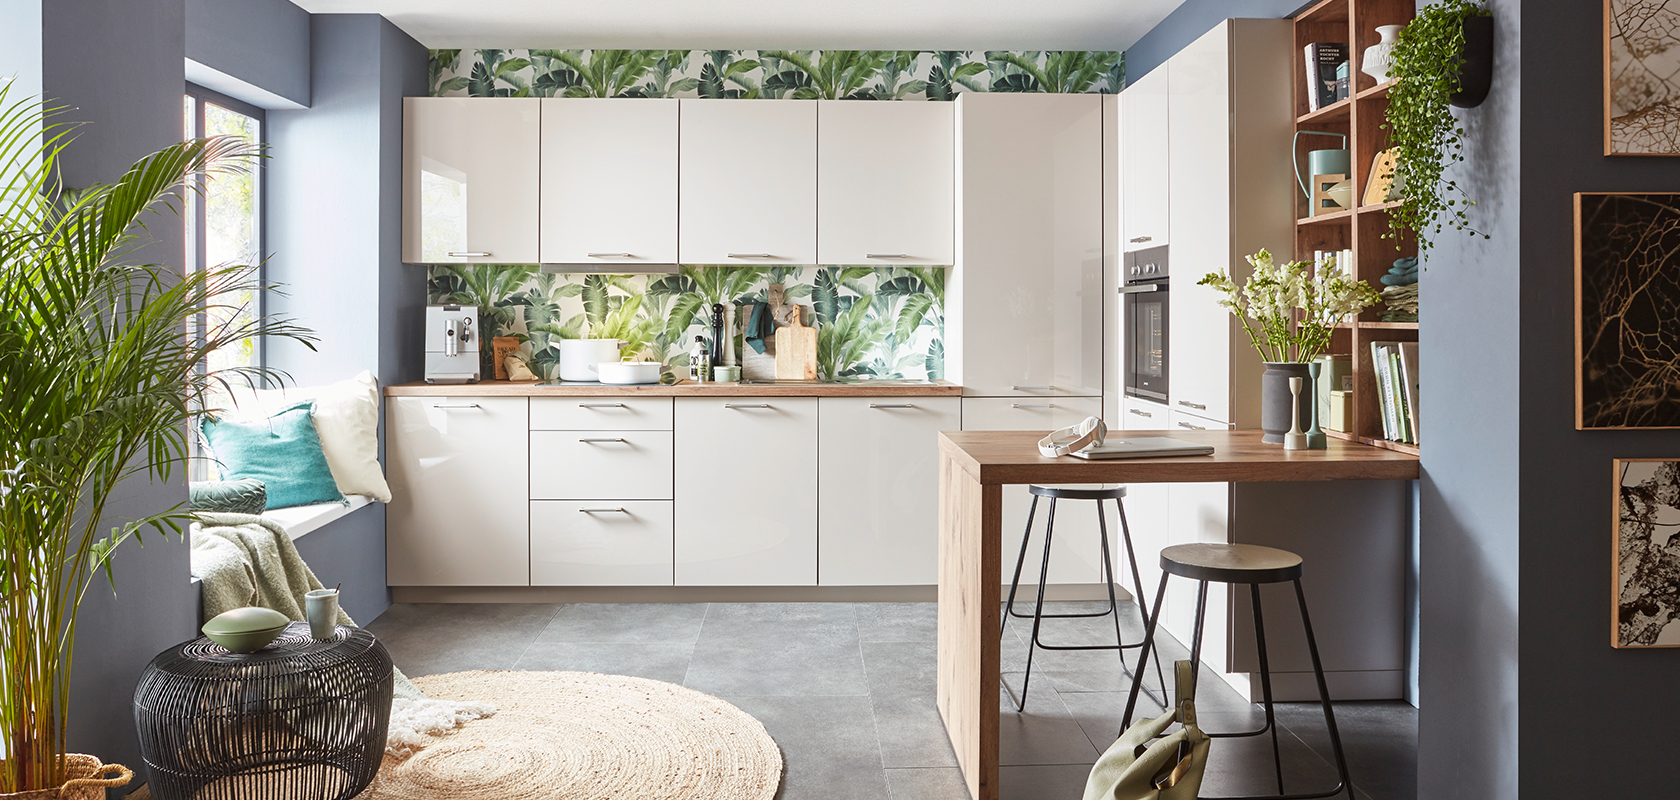 Interior de cocina moderna con gabinetes blancos, papel tapiz tropical, encimera de madera, taburetes de bar elegantes y acentos de plantas verdes creando un espacio acogedor y contemporáneo.